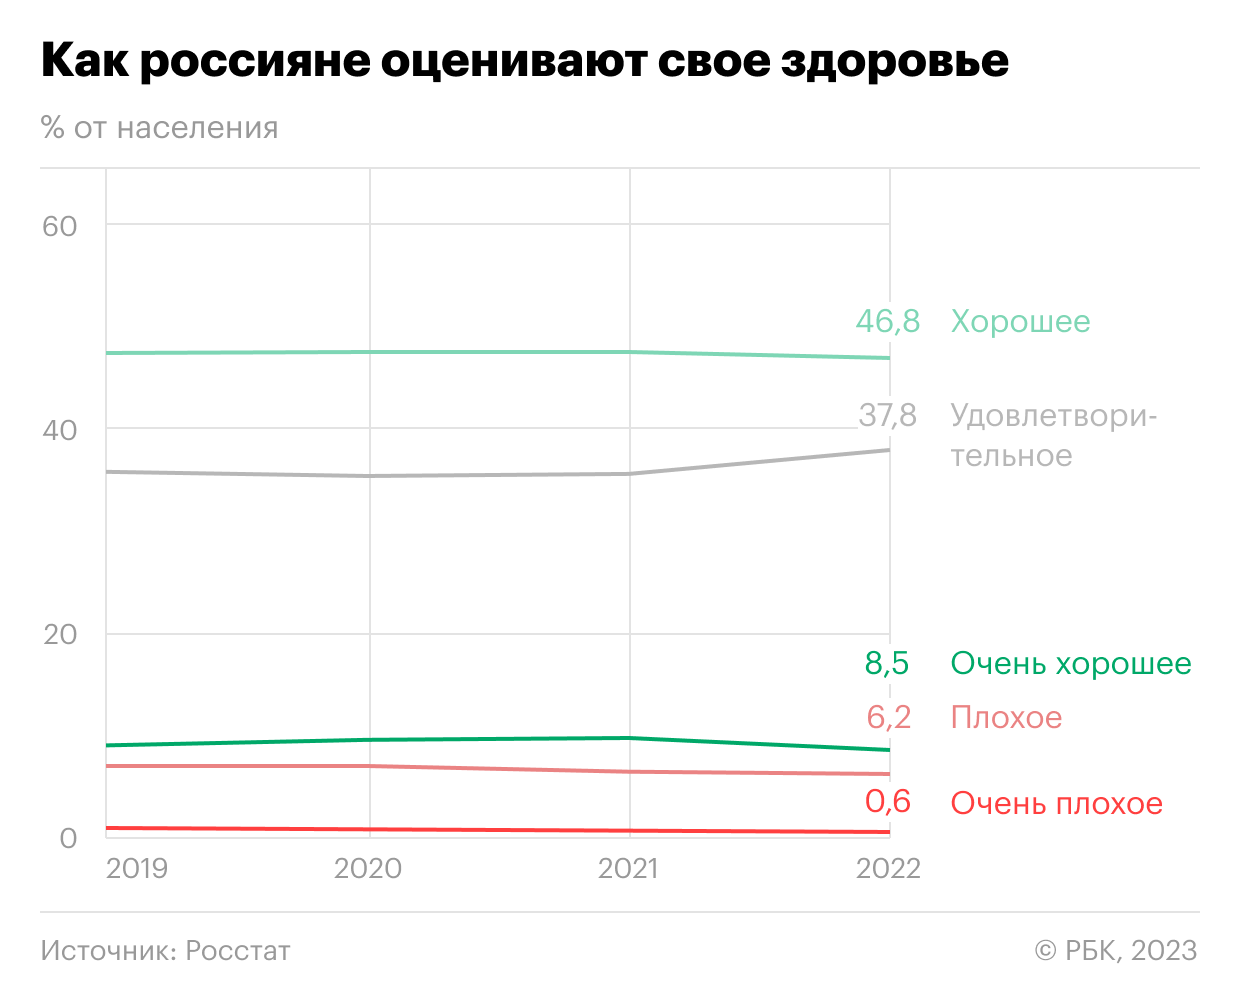 Как мужчины в России стали чаще заниматься анти-ЗОЖ. Инфографика